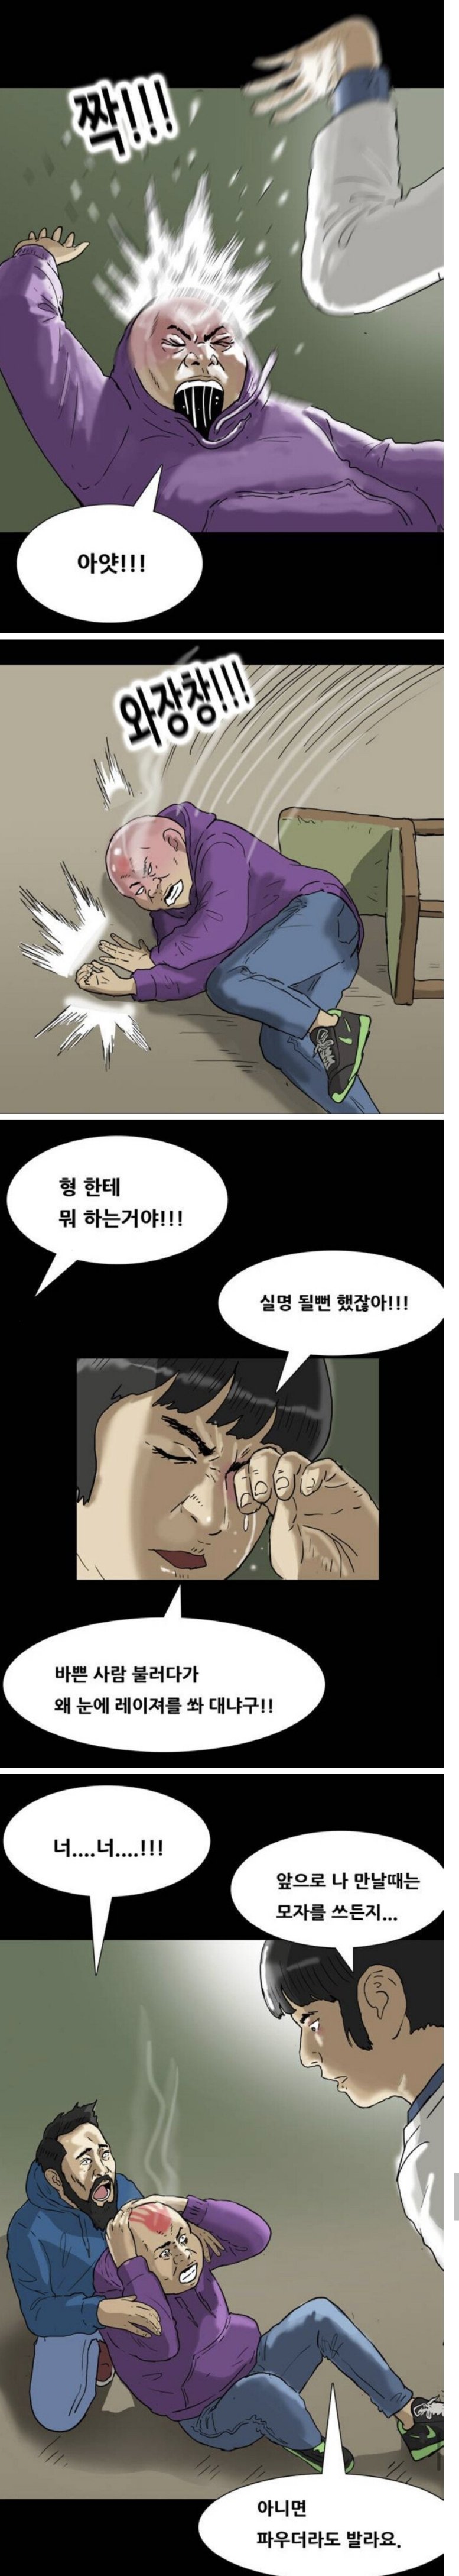 기안84 만화 올타임 레전드jpg